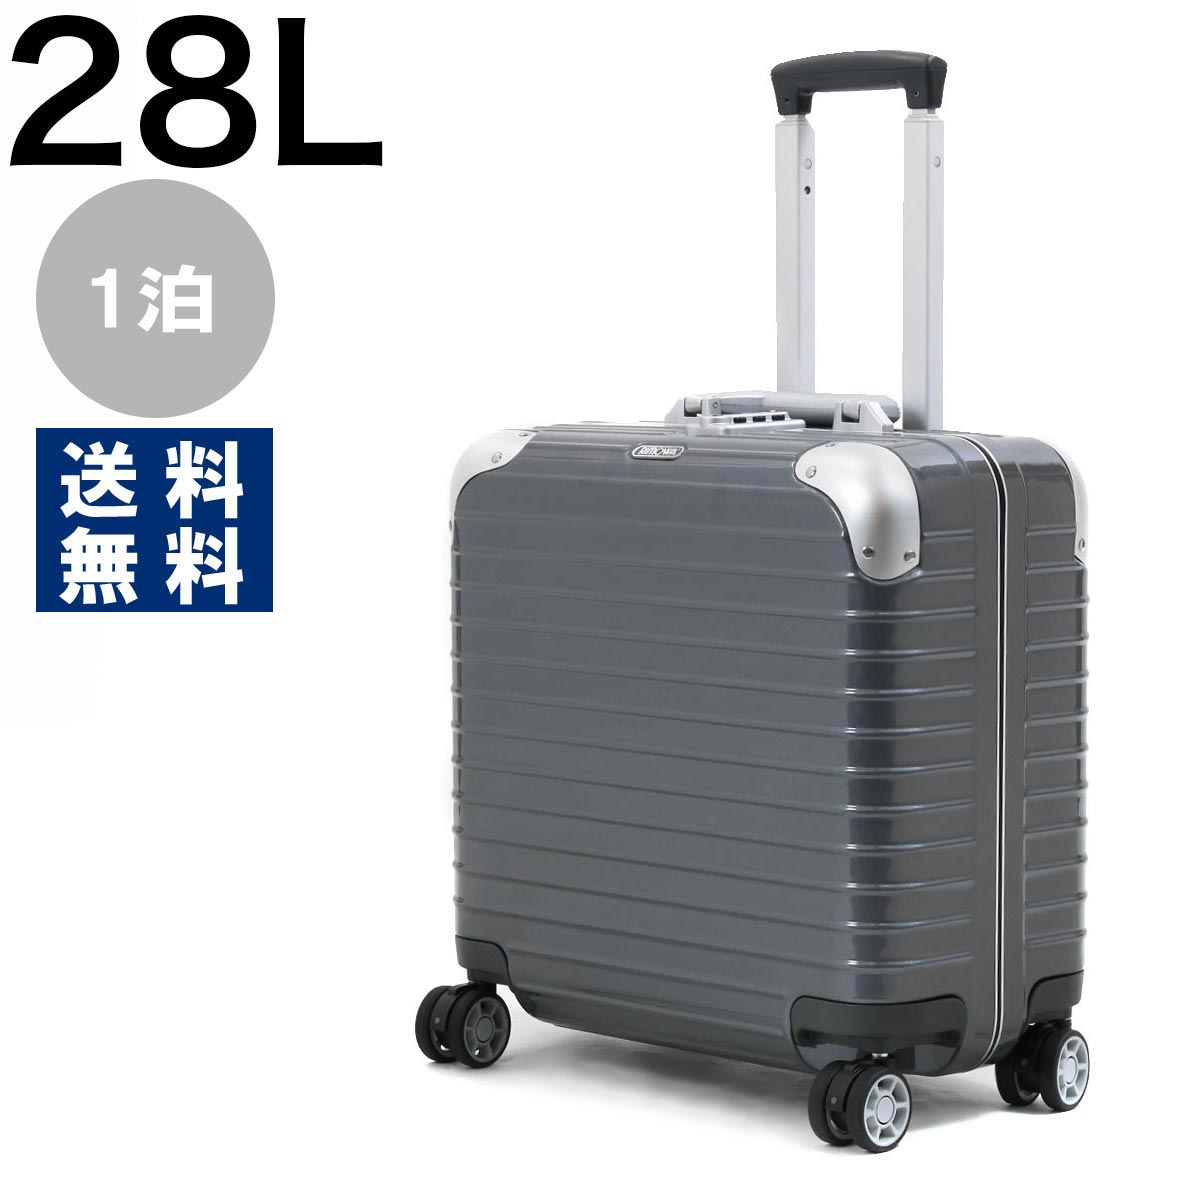 全国送料無料 リモワ 人気ブランド多数対象 スーツケース 旅行用バッグ バッグ メンズ レディース 28L シールグレー 880.40.54.4 1泊 新作製品、世界最高品質人気! RIMOWA リンボ